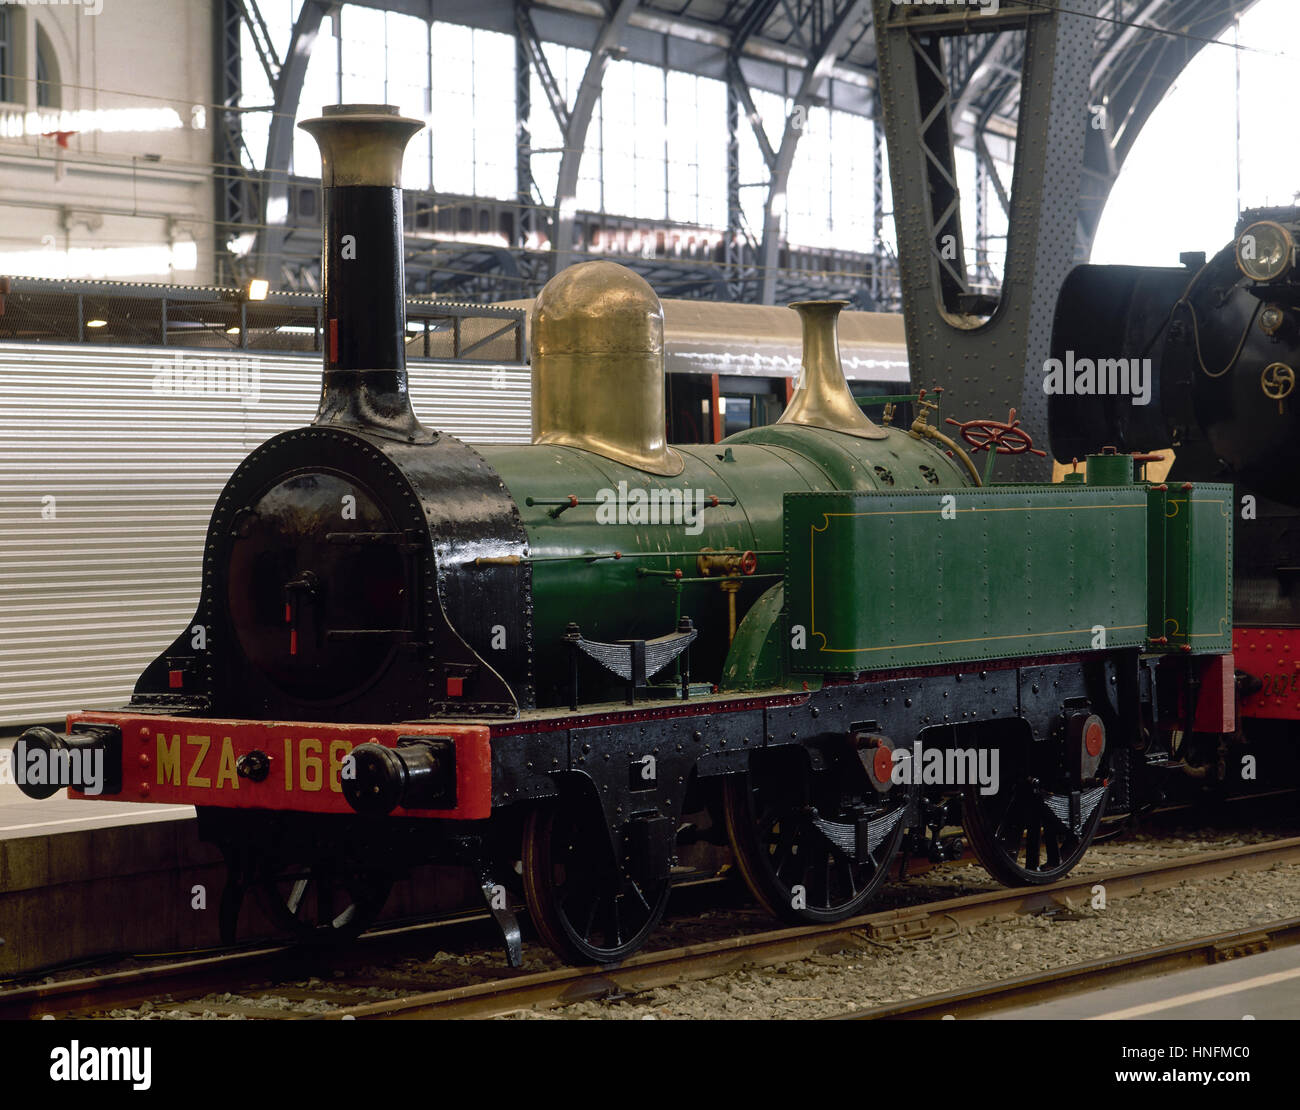 Lokomotive MZA 168. Das Modell Martorell ist die älteste erhaltene Lokomotive in Spanien.  Ausstellung: 150 Jahre Eisenbahngeschichte. Frankreich-Station. Barcelona, Spanien. Stockfoto